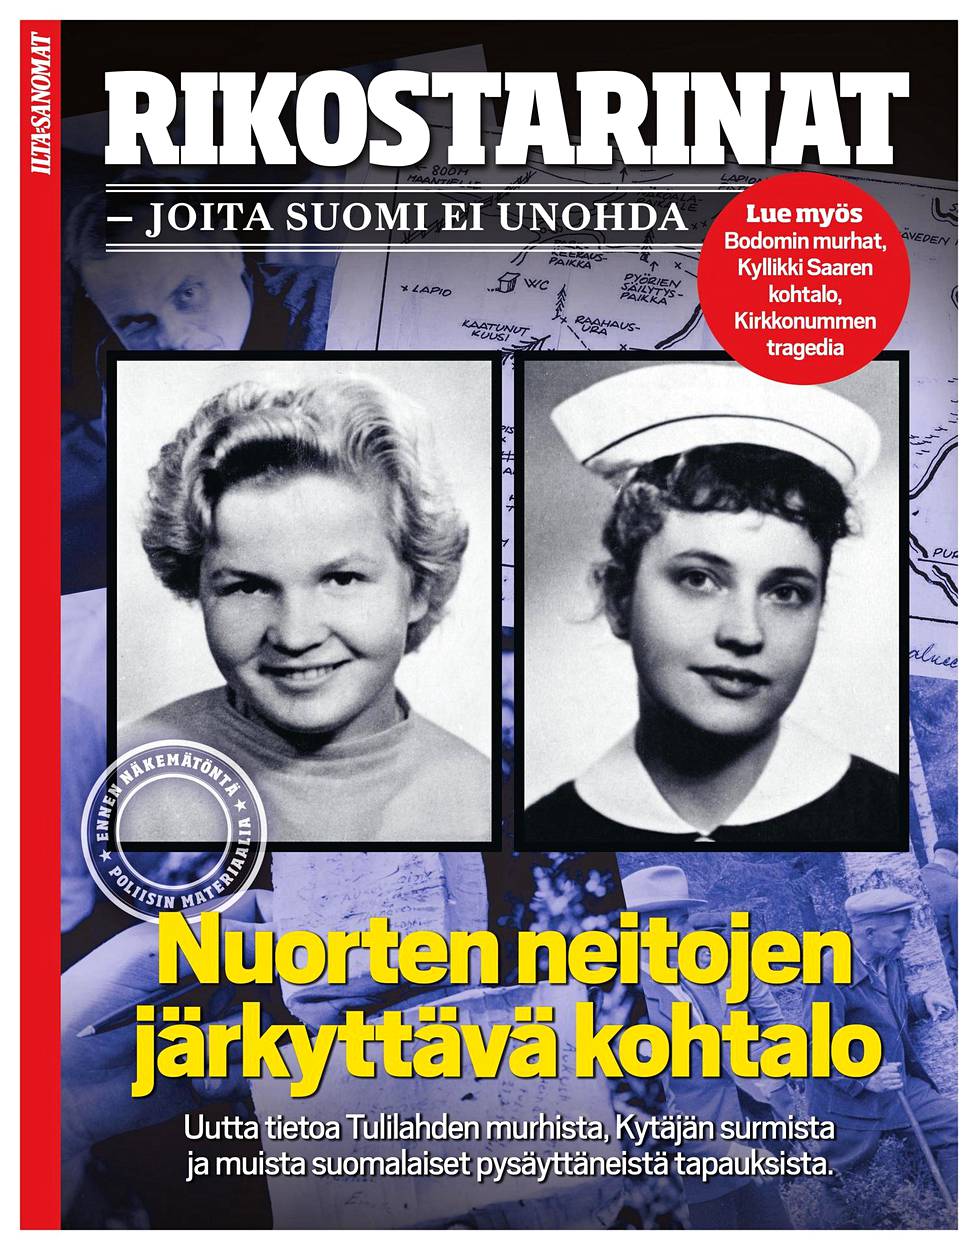 Lisää Suomen rikoshistoriasta voit lukea Ilta-Sanomien erikoisjulkaisusta Rikostarinat, joita Suomi ei unohda.